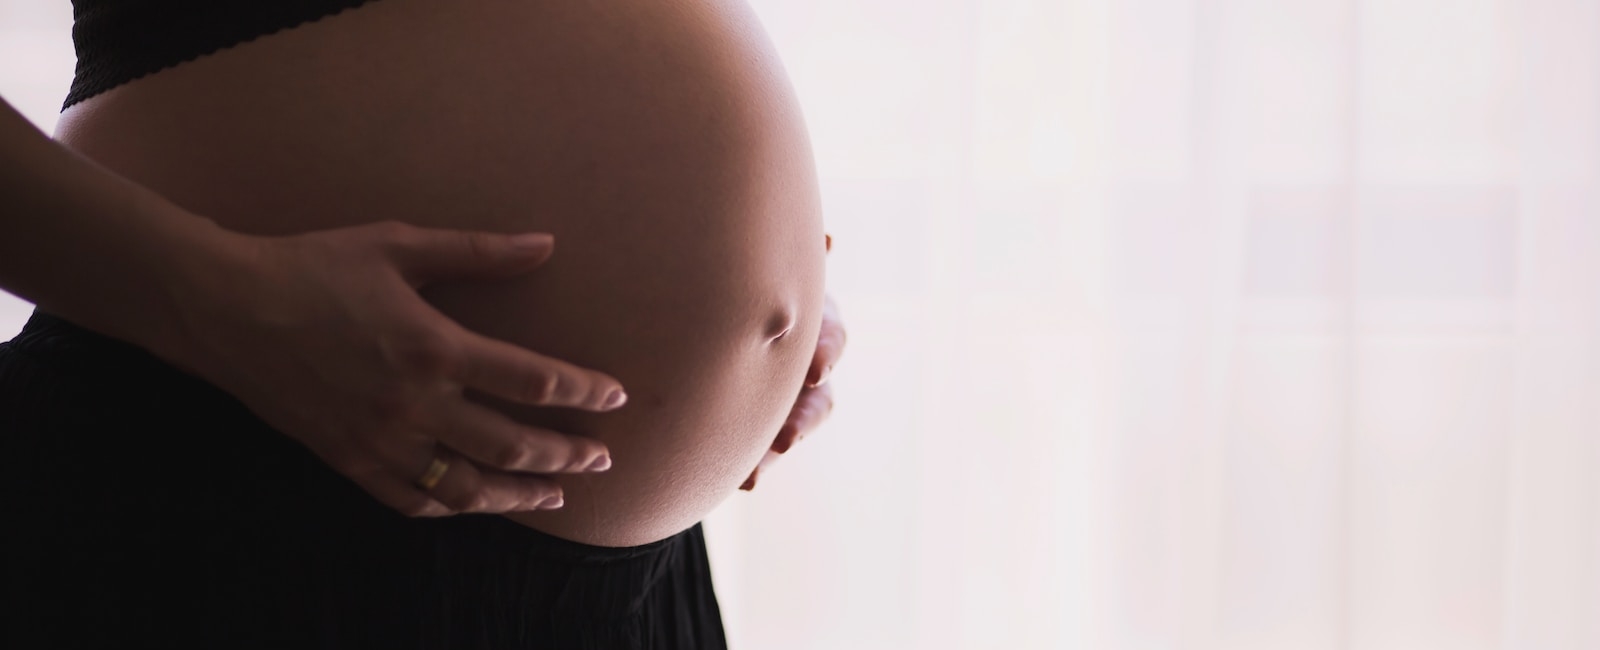 6 tips voor zwangere vrouwen tijdens de zomermaanden